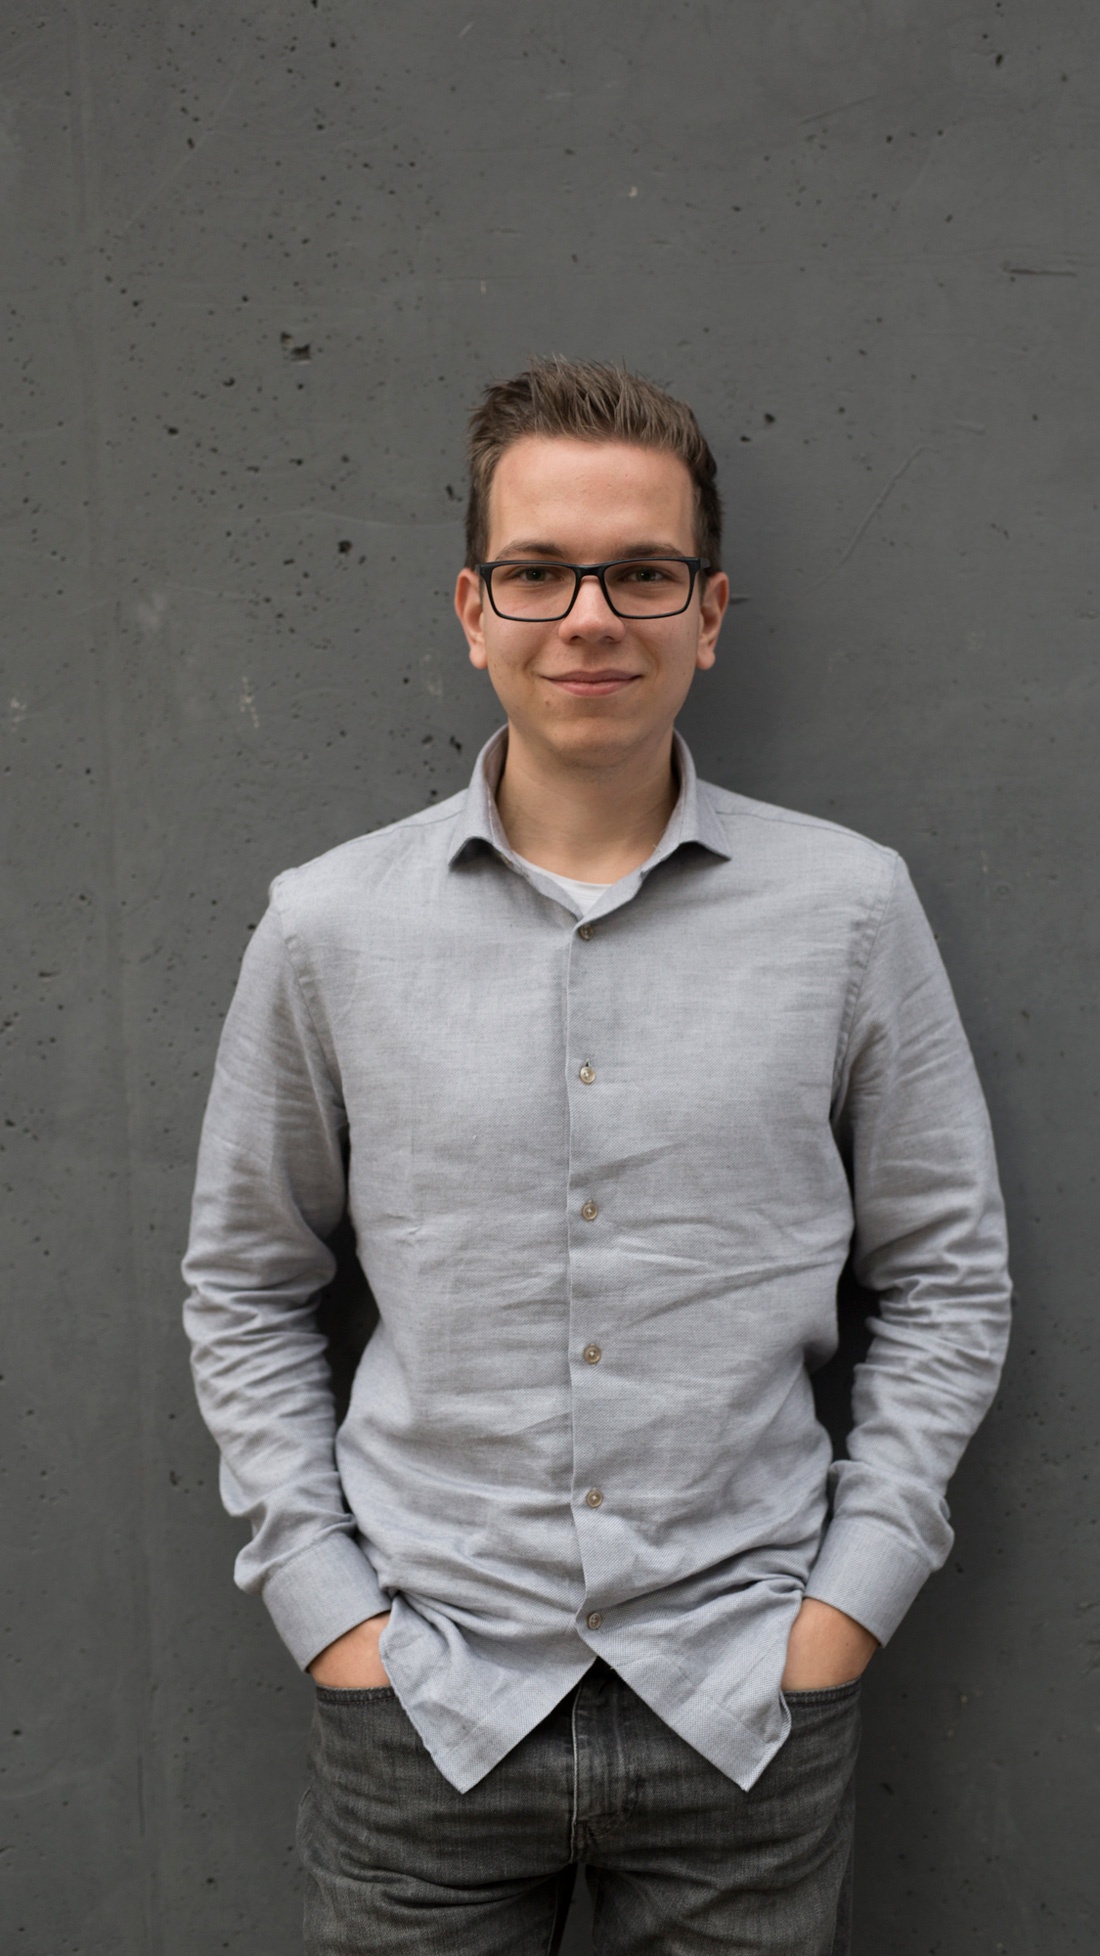 Marco studiert Business Management an der Fachhochschule Erfurt, Johannes Heinke